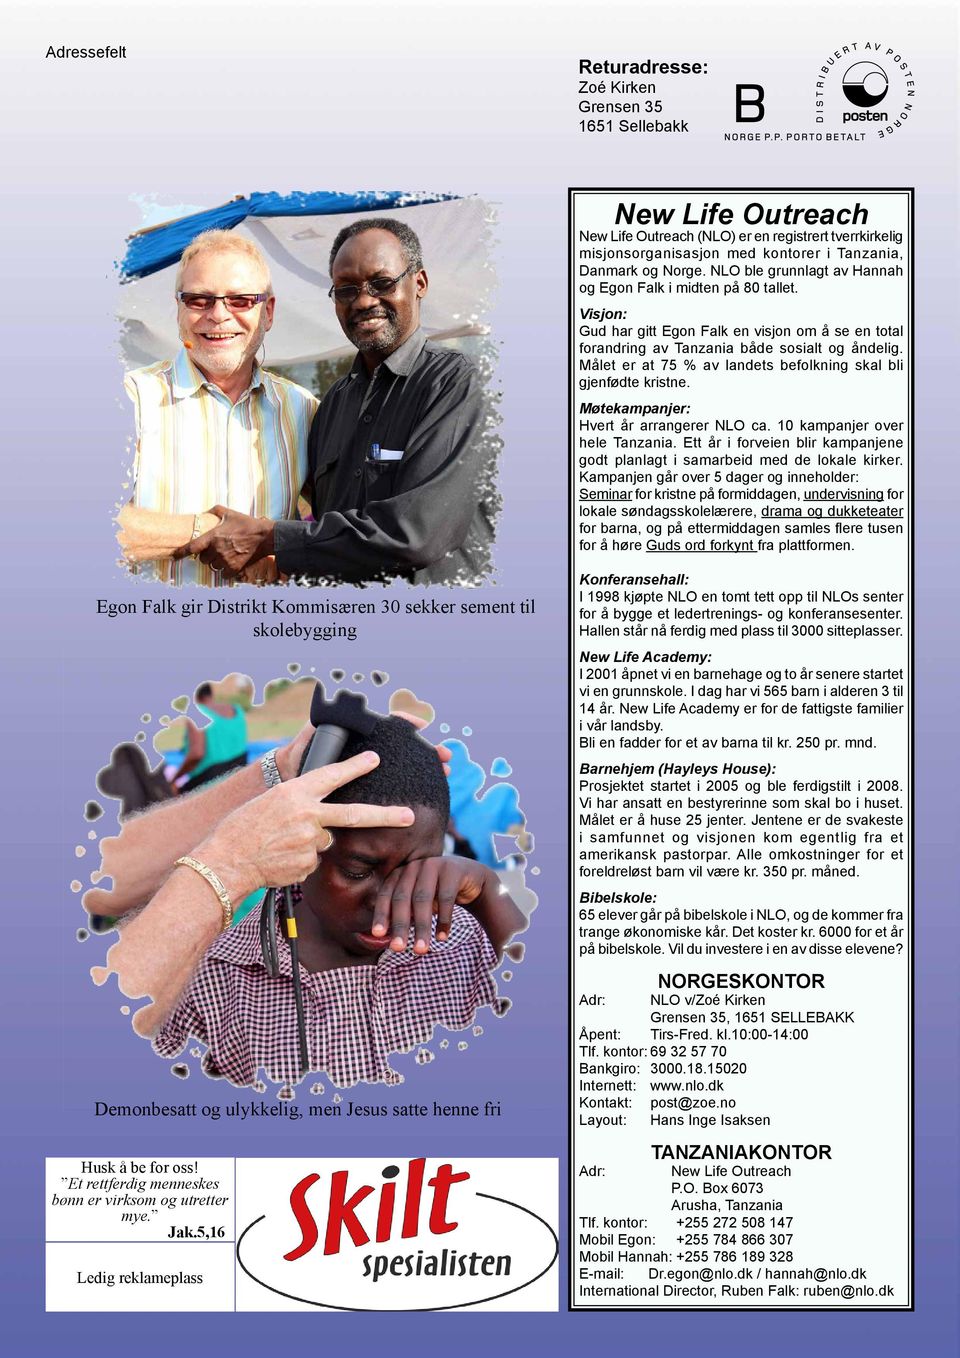 Målet er at 75 % av landets befolkning skal bli gjenfødte kristne. Møtekampanjer: Hvert år arrangerer NLO ca. 10 kampanjer over hele Tanzania.